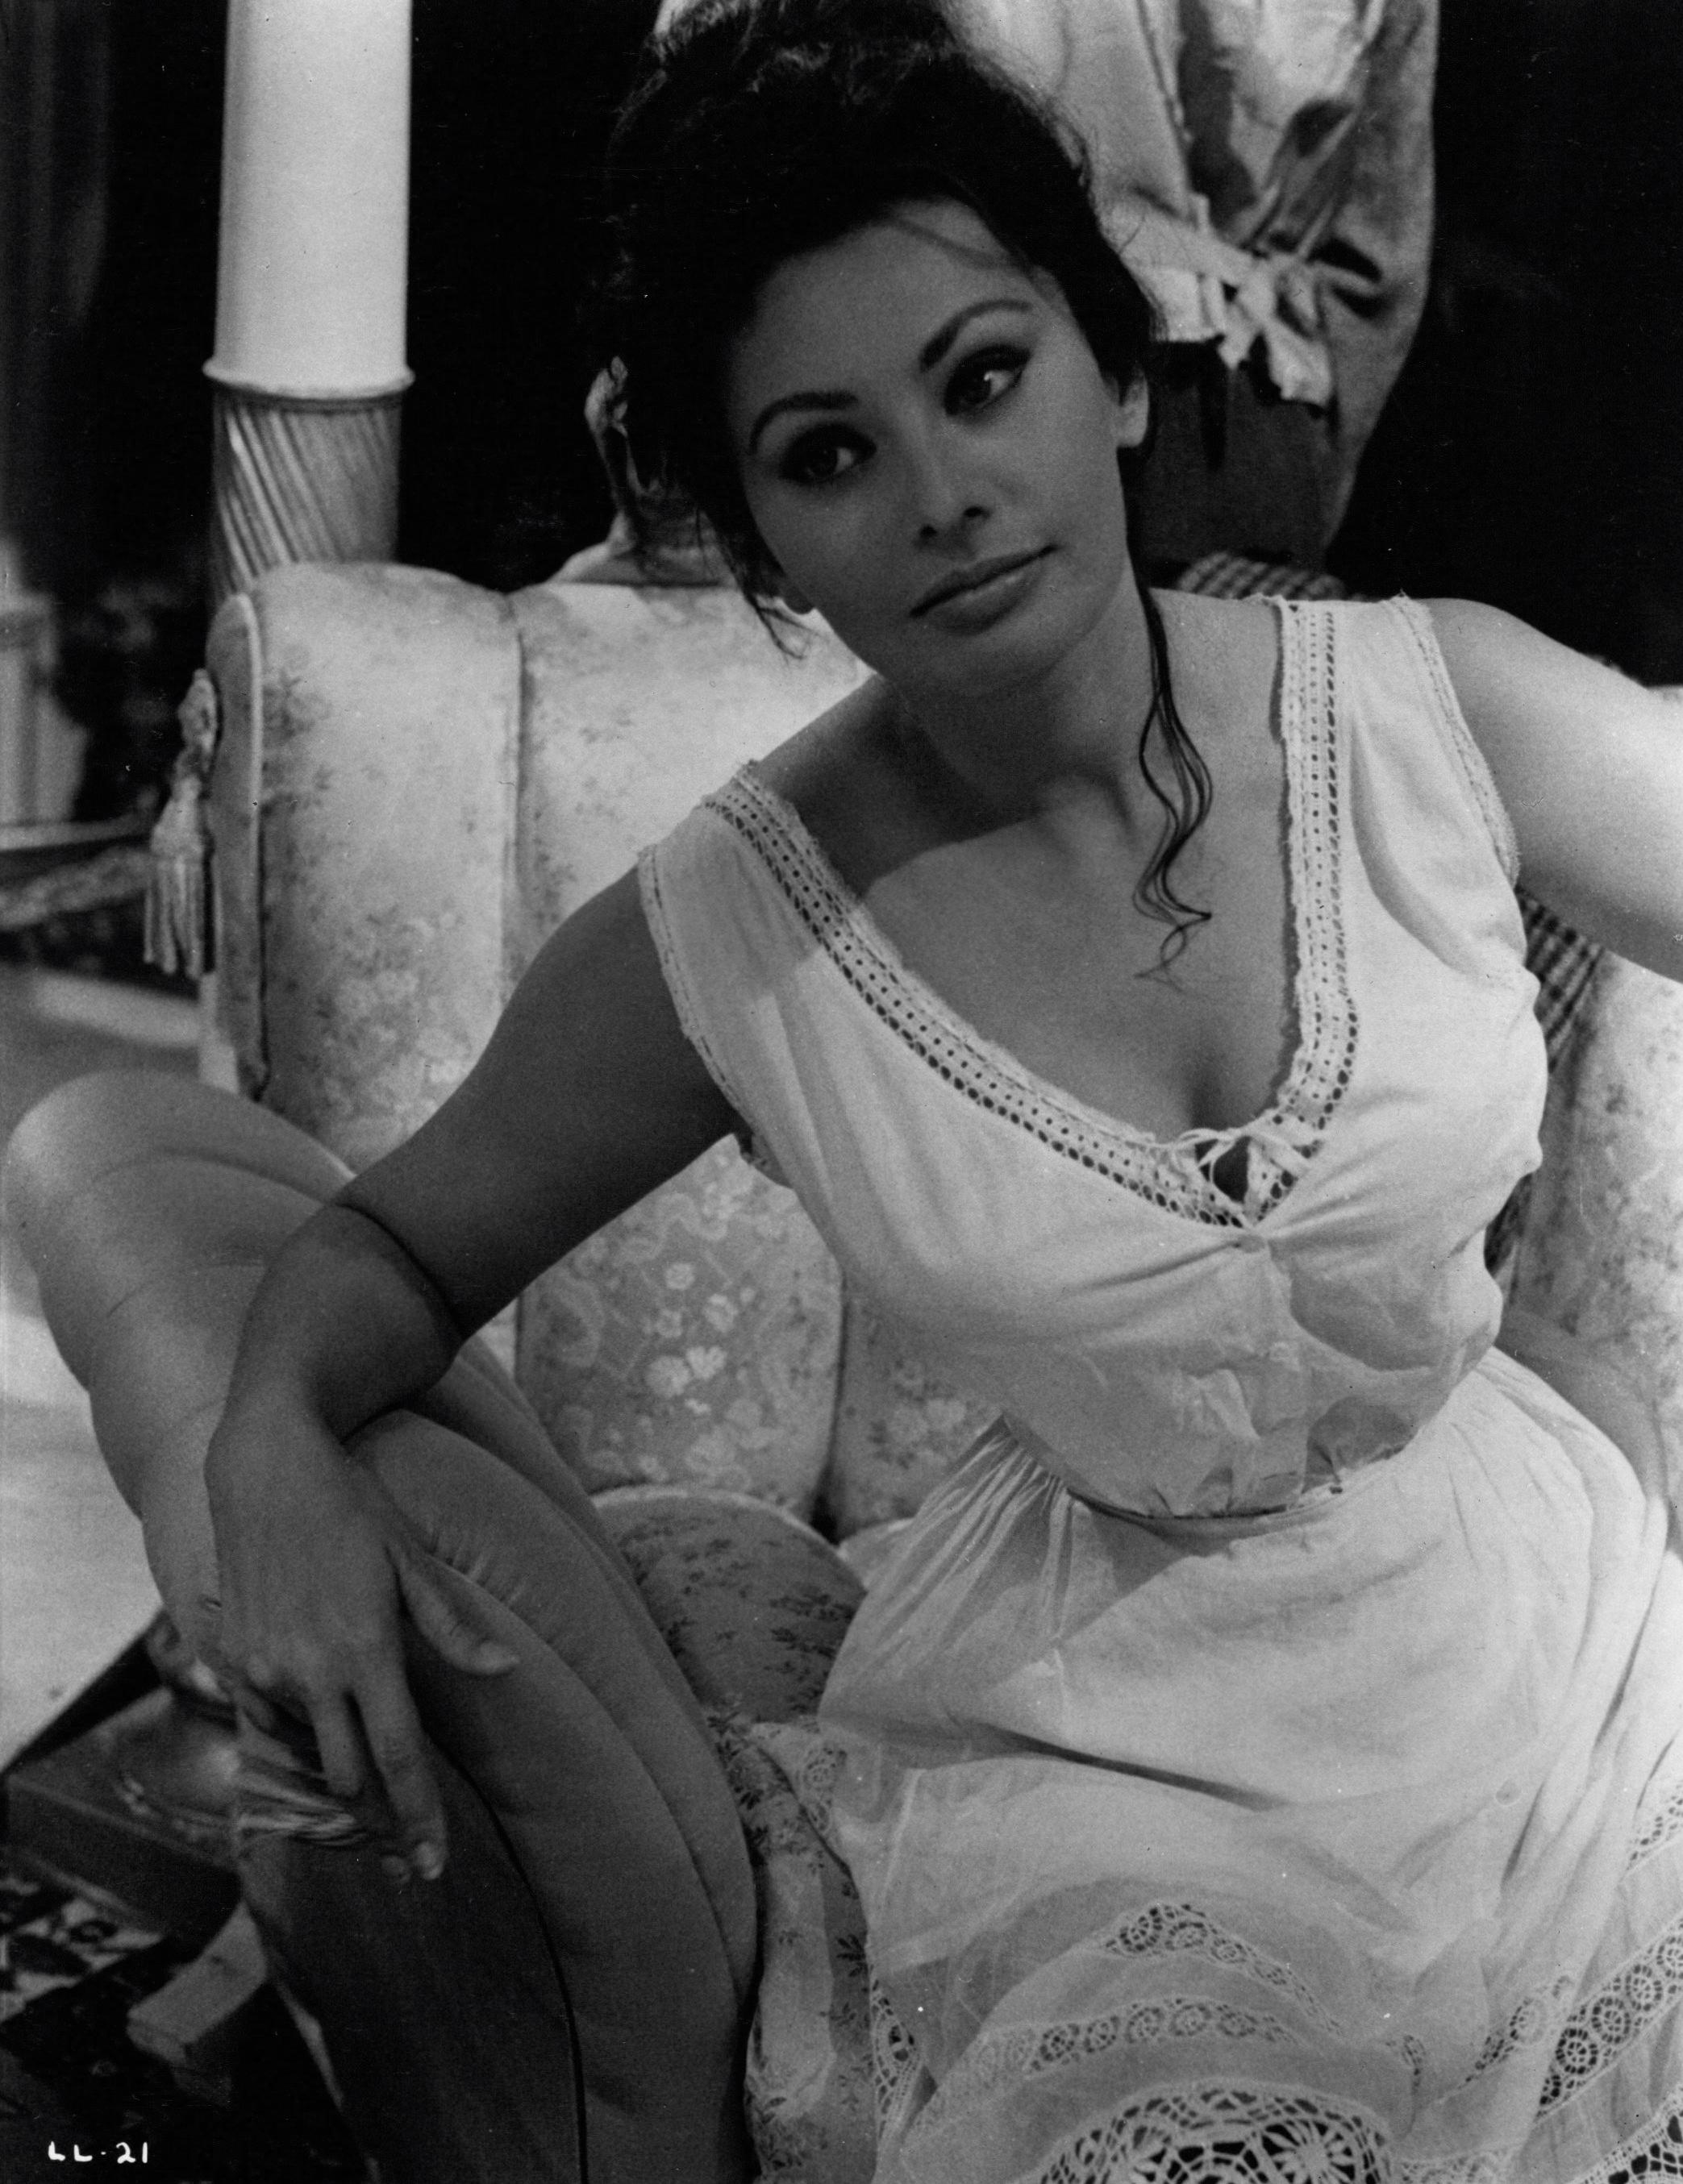 Unknown Portrait Photograph - Sophia Loren in "Lady L" Vintage Original Photograph